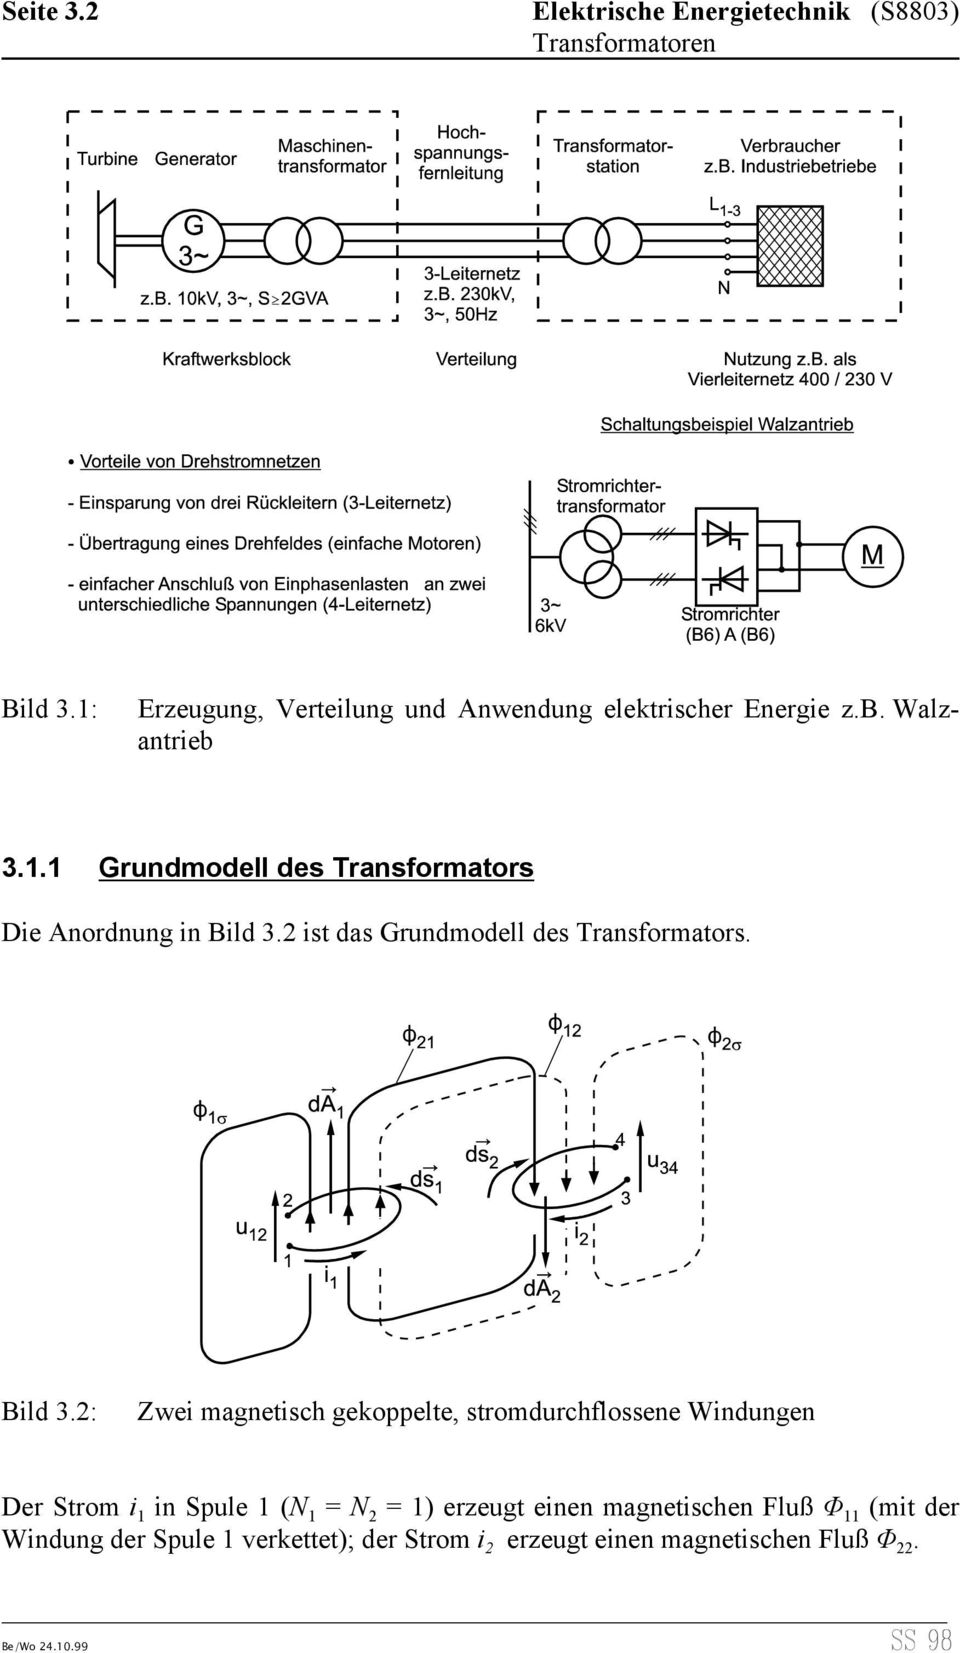 3 Transformatoren Elektrische Energietechnik S8803 Seite 31